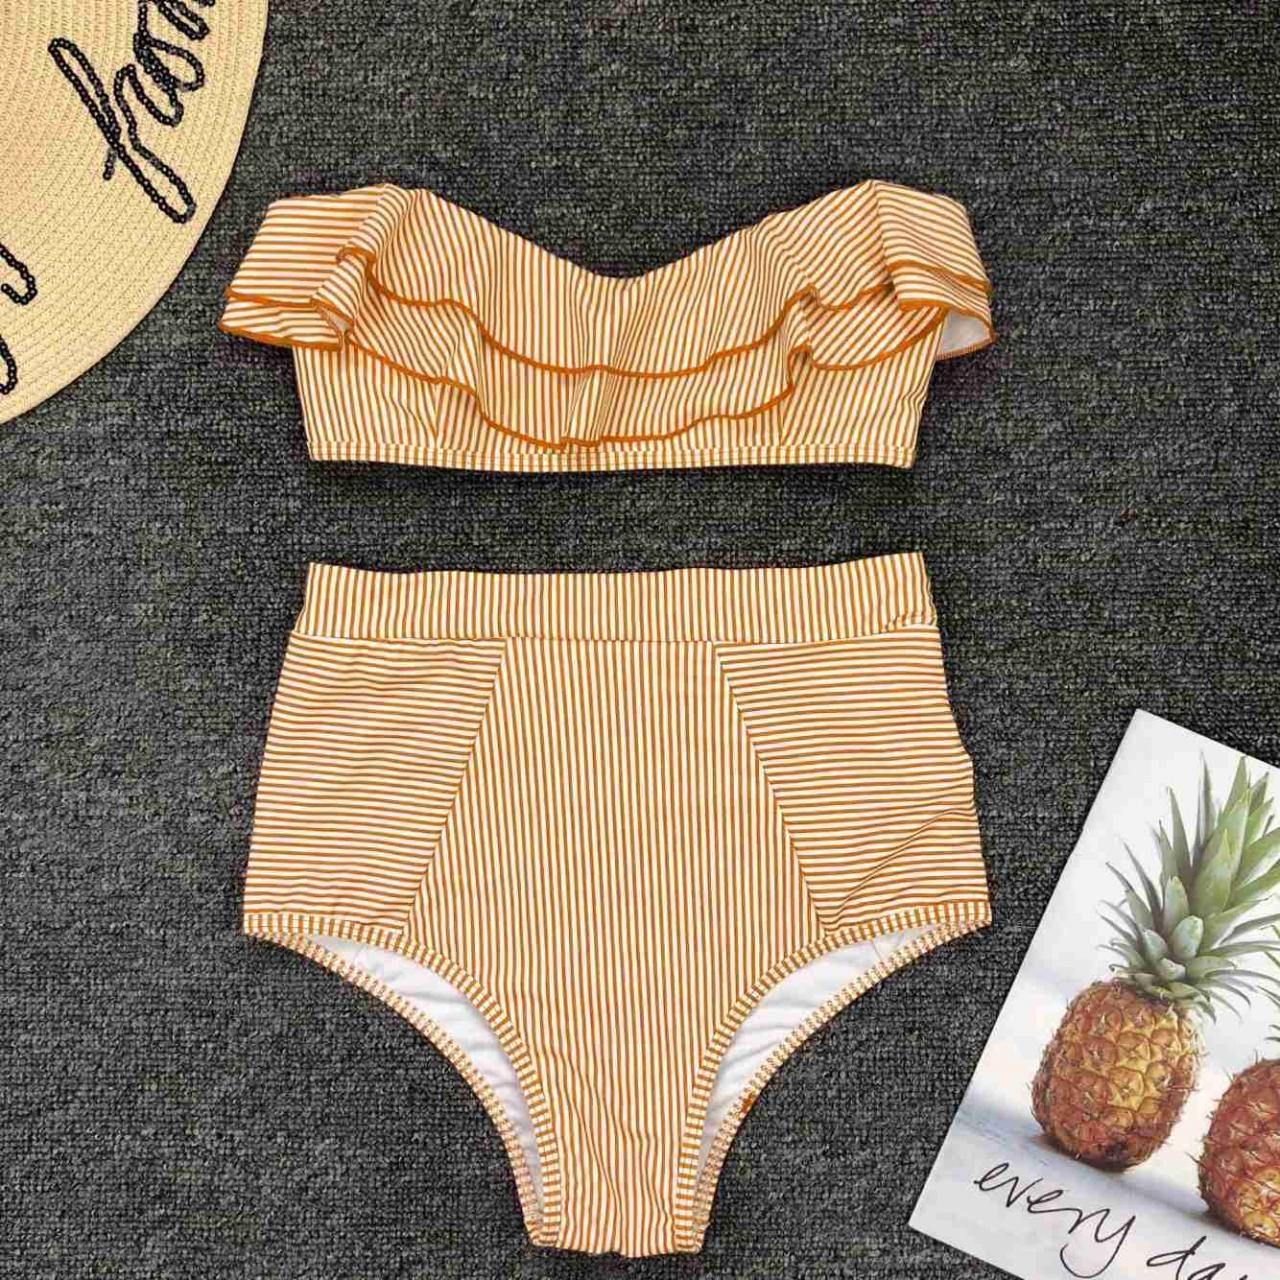 Mini Bikini 2021 Swimwear Women Push Up Bikini Set Padded Bra Sexy Swimsuit Bandage Swim Suit Brazilian Biquini, Two Pieces Swimwear Stripe